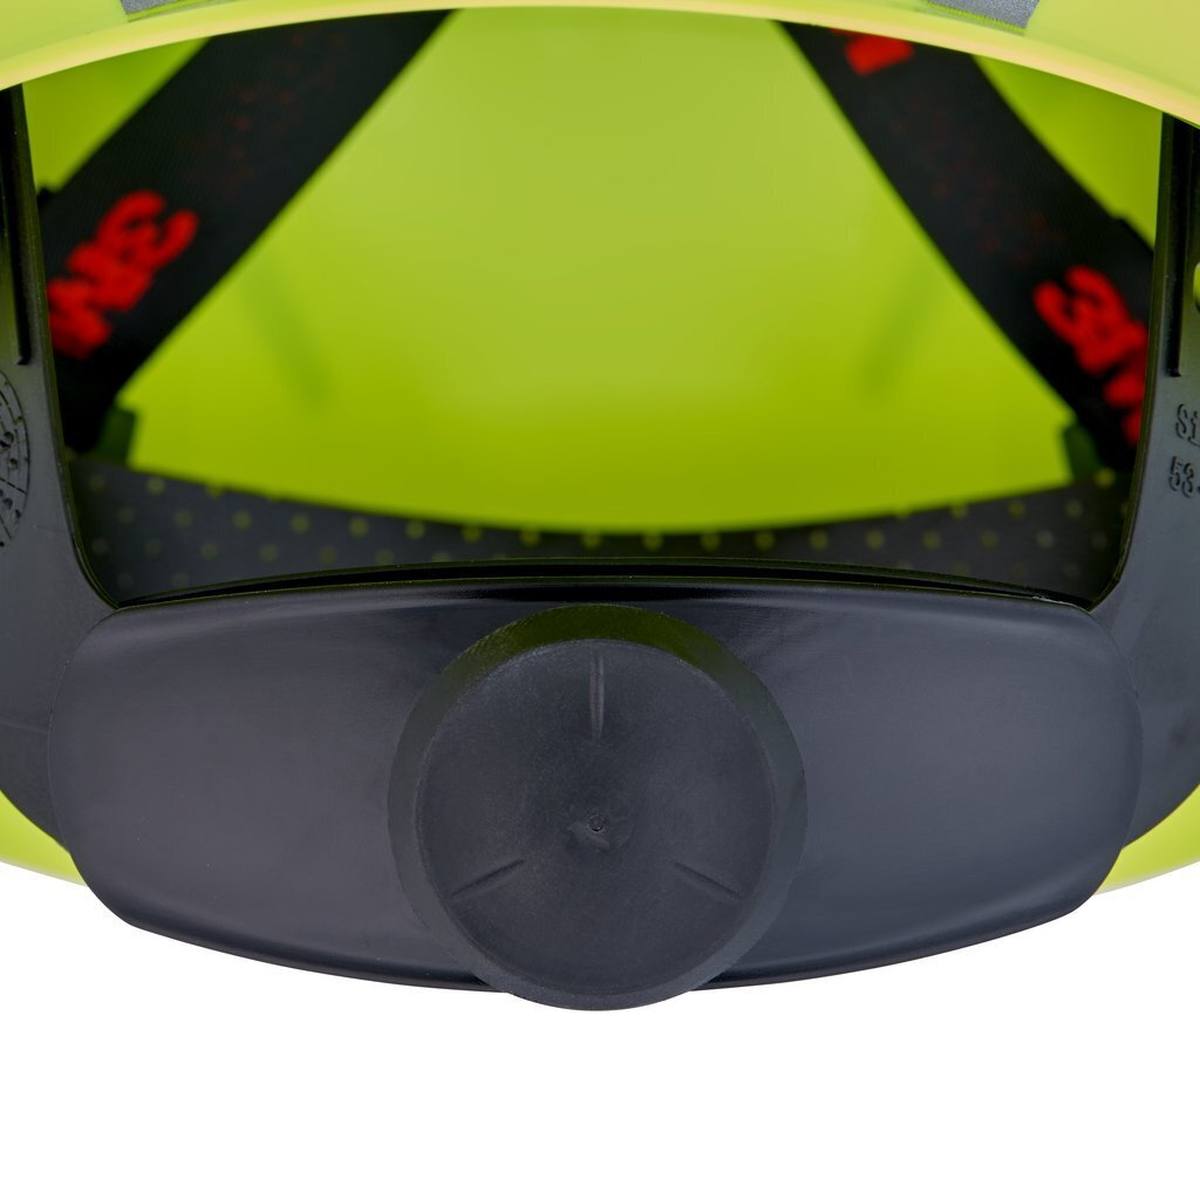 3M Casco de seguridad G3000 con indicador UV, verde neón, ABS, cierre de trinquete ventilado, banda de sudor de plástico, pegatina reflectante